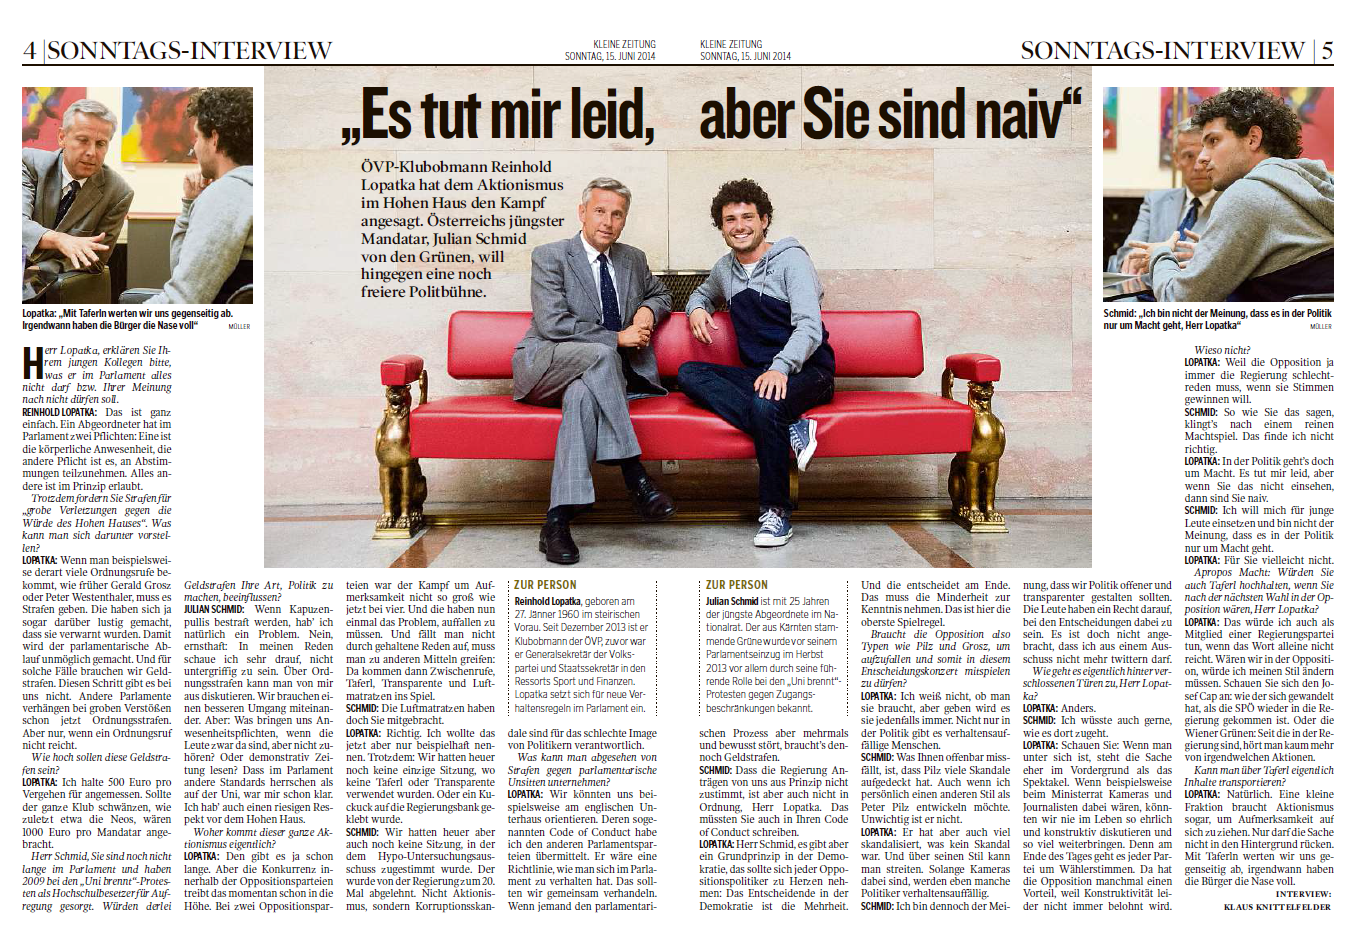 Kleine Zeitung, 15.06.2014.